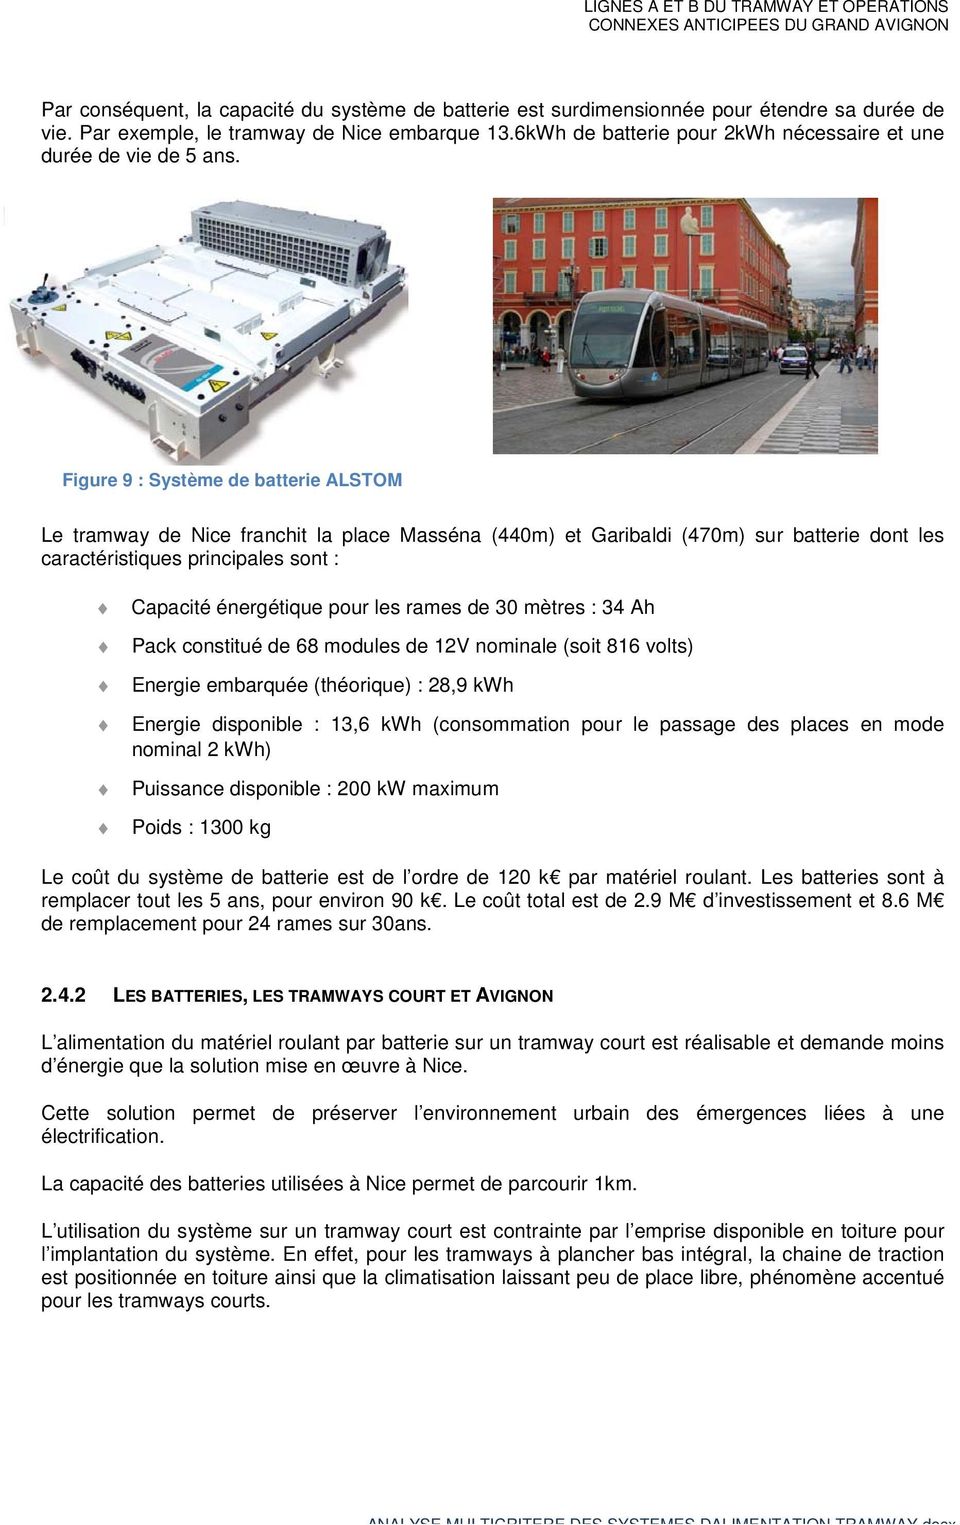 Figure 9 : Système de batterie ALSTOM Le tramway de Nice franchit la place Masséna (440m) et Garibaldi (470m) sur batterie dont les caractéristiques principales sont : Capacité énergétique pour les